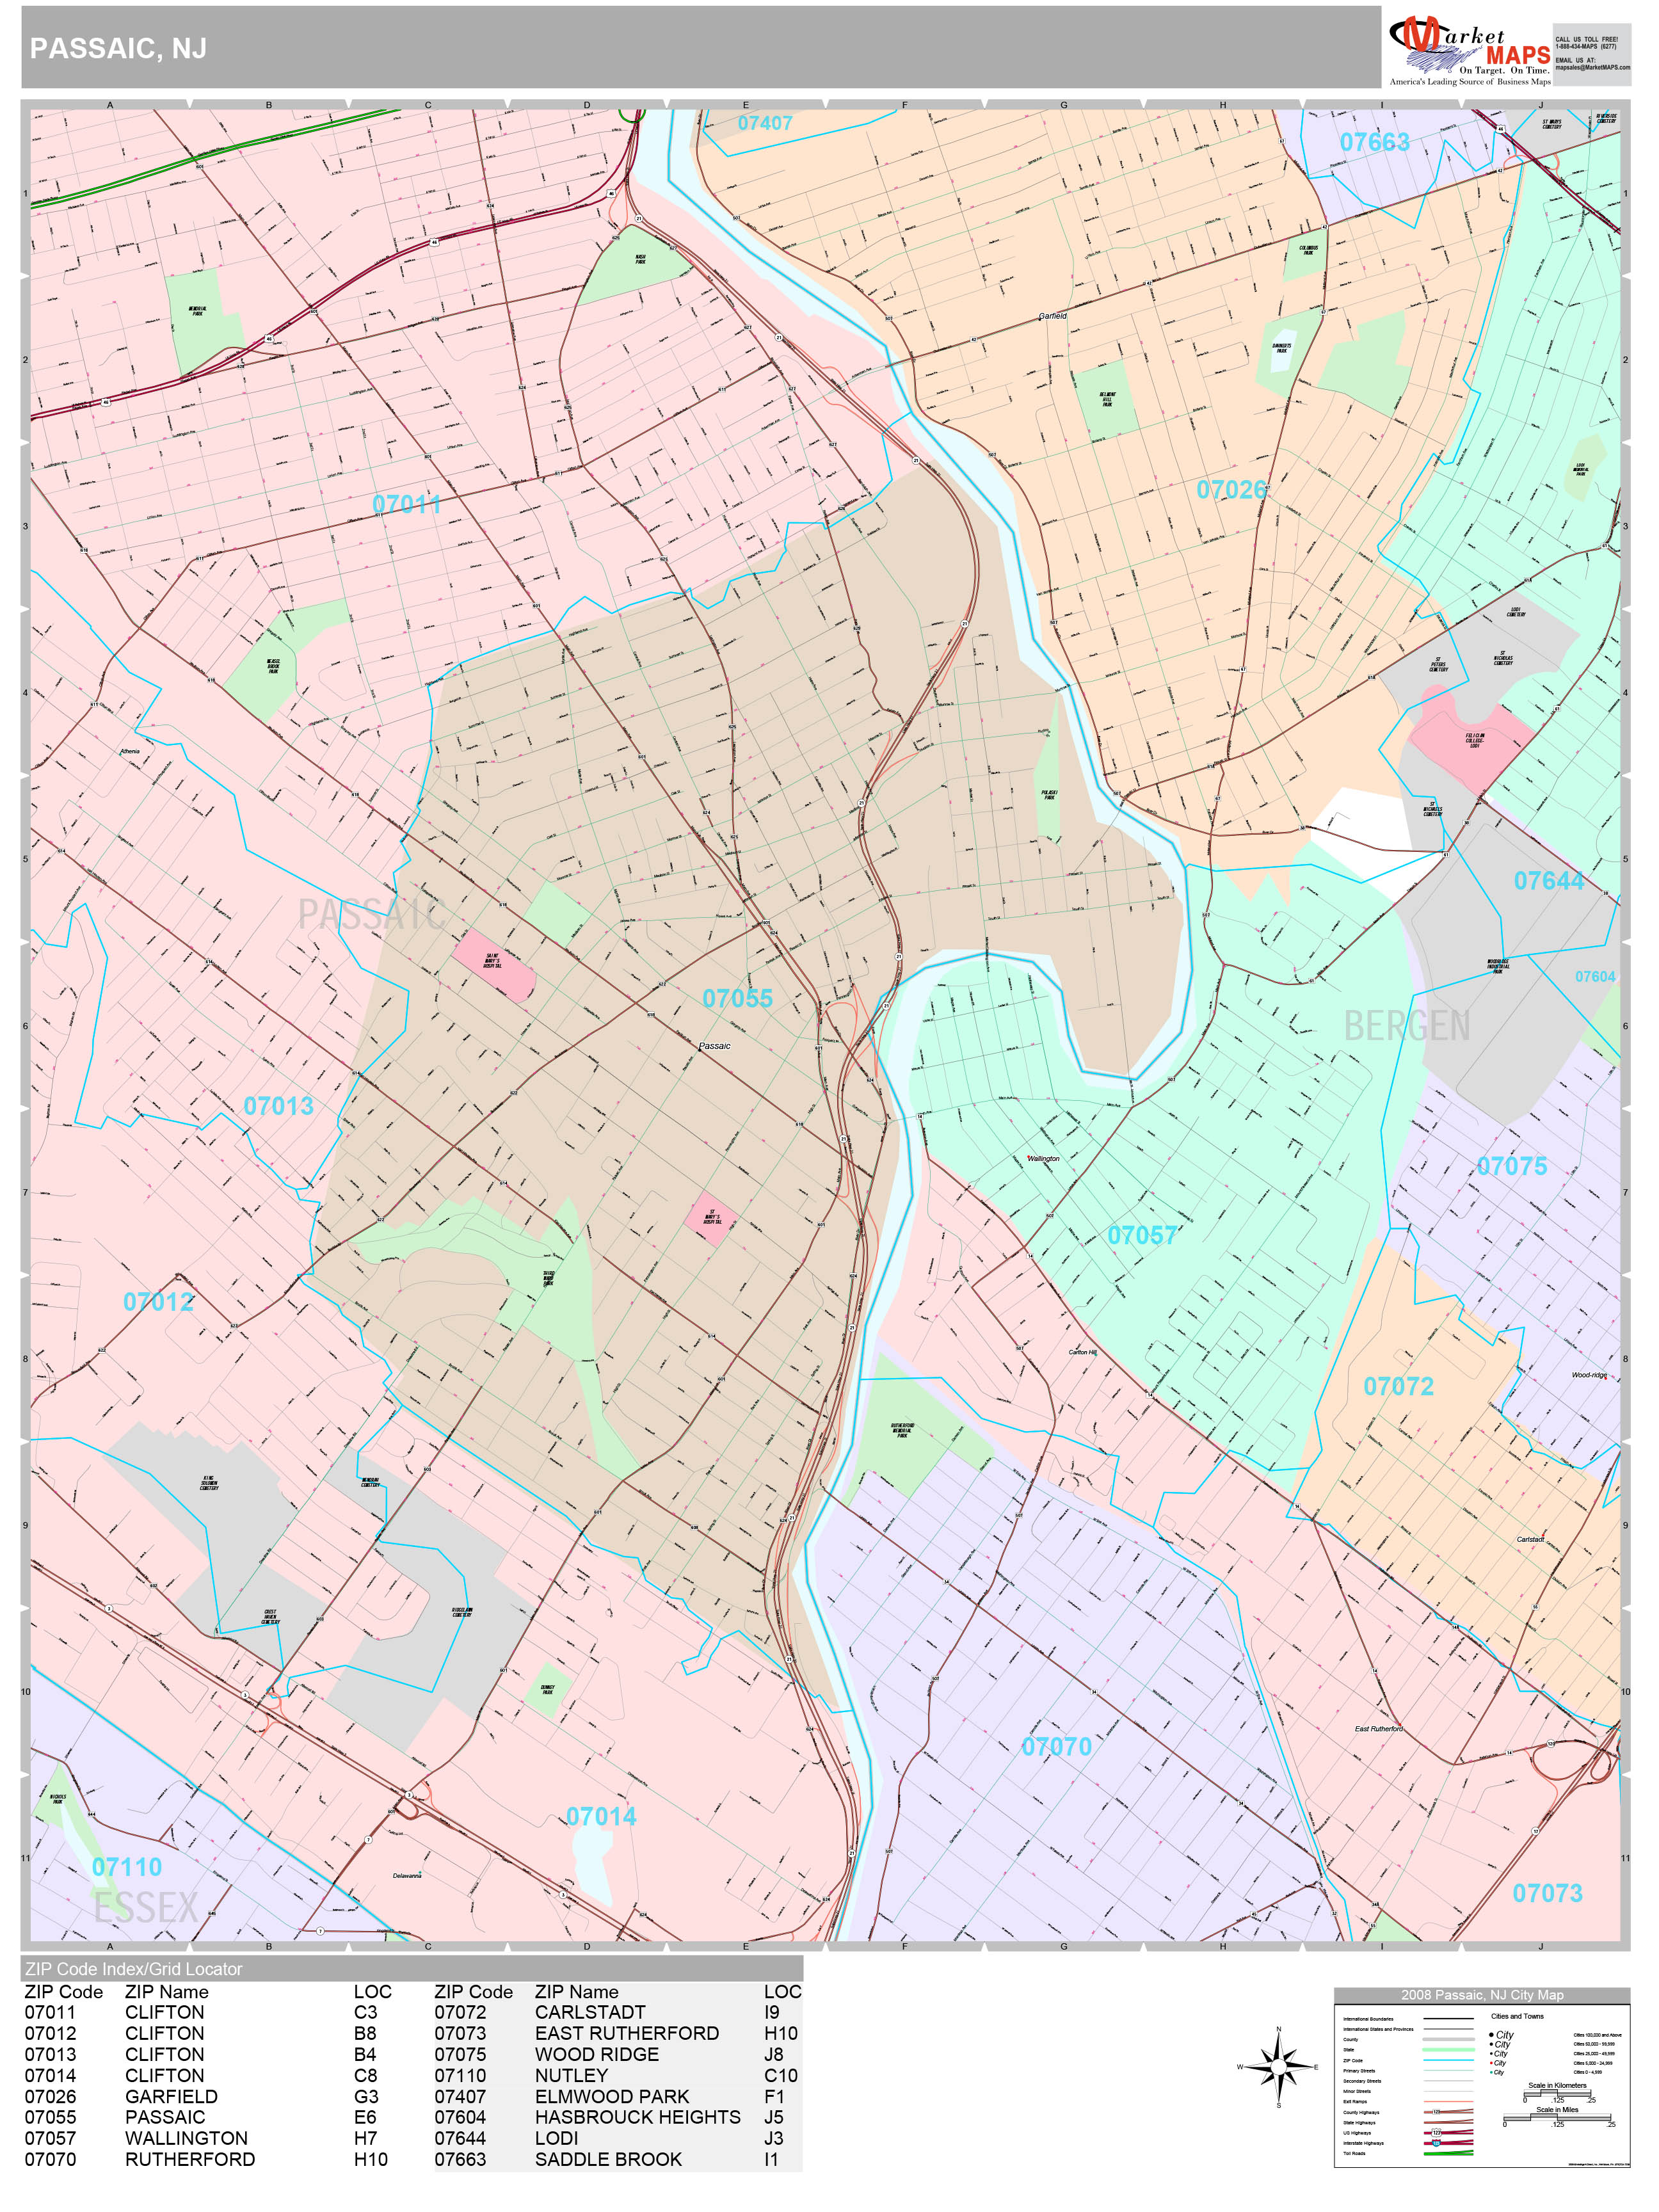 Passaic New Jersey Wall Map Premium Style By Marketmaps Mapsales 0850